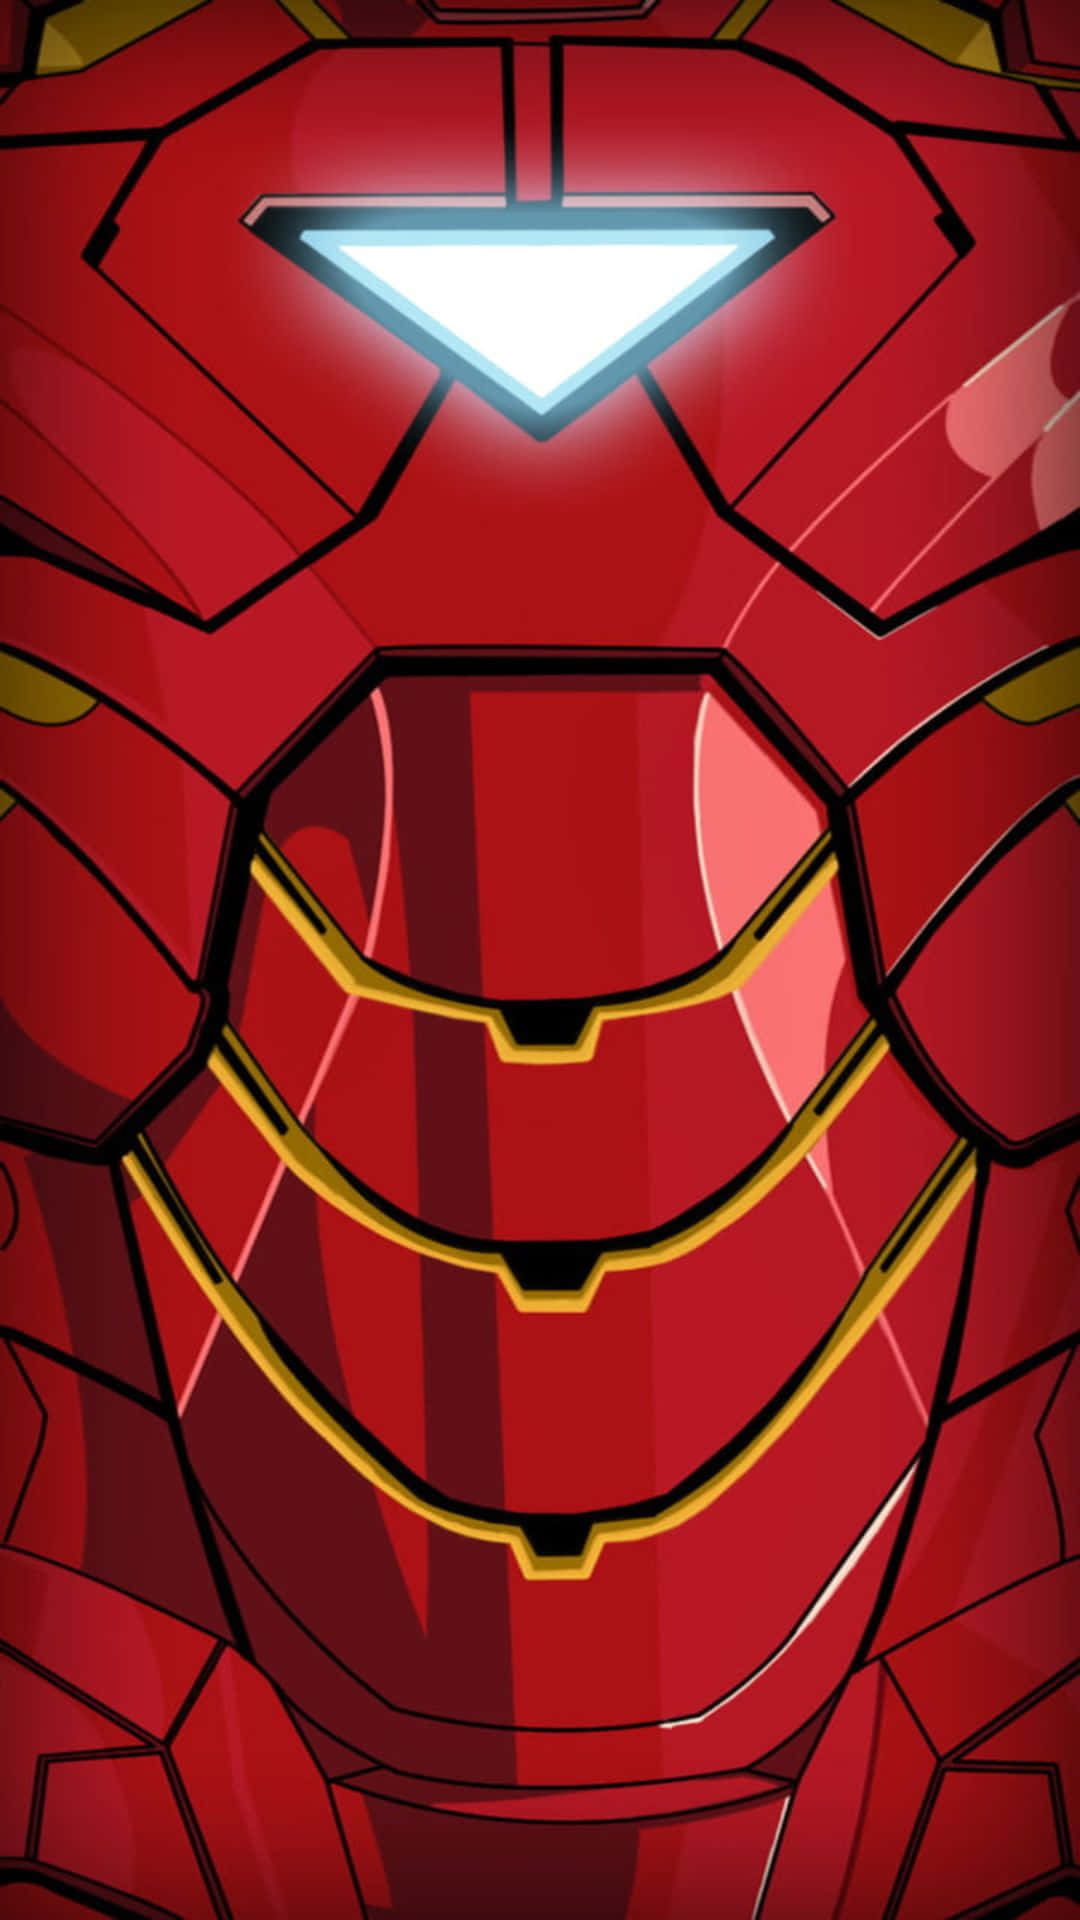 Portal'esperienza Android Al Livello Successivo Con Iron Man!